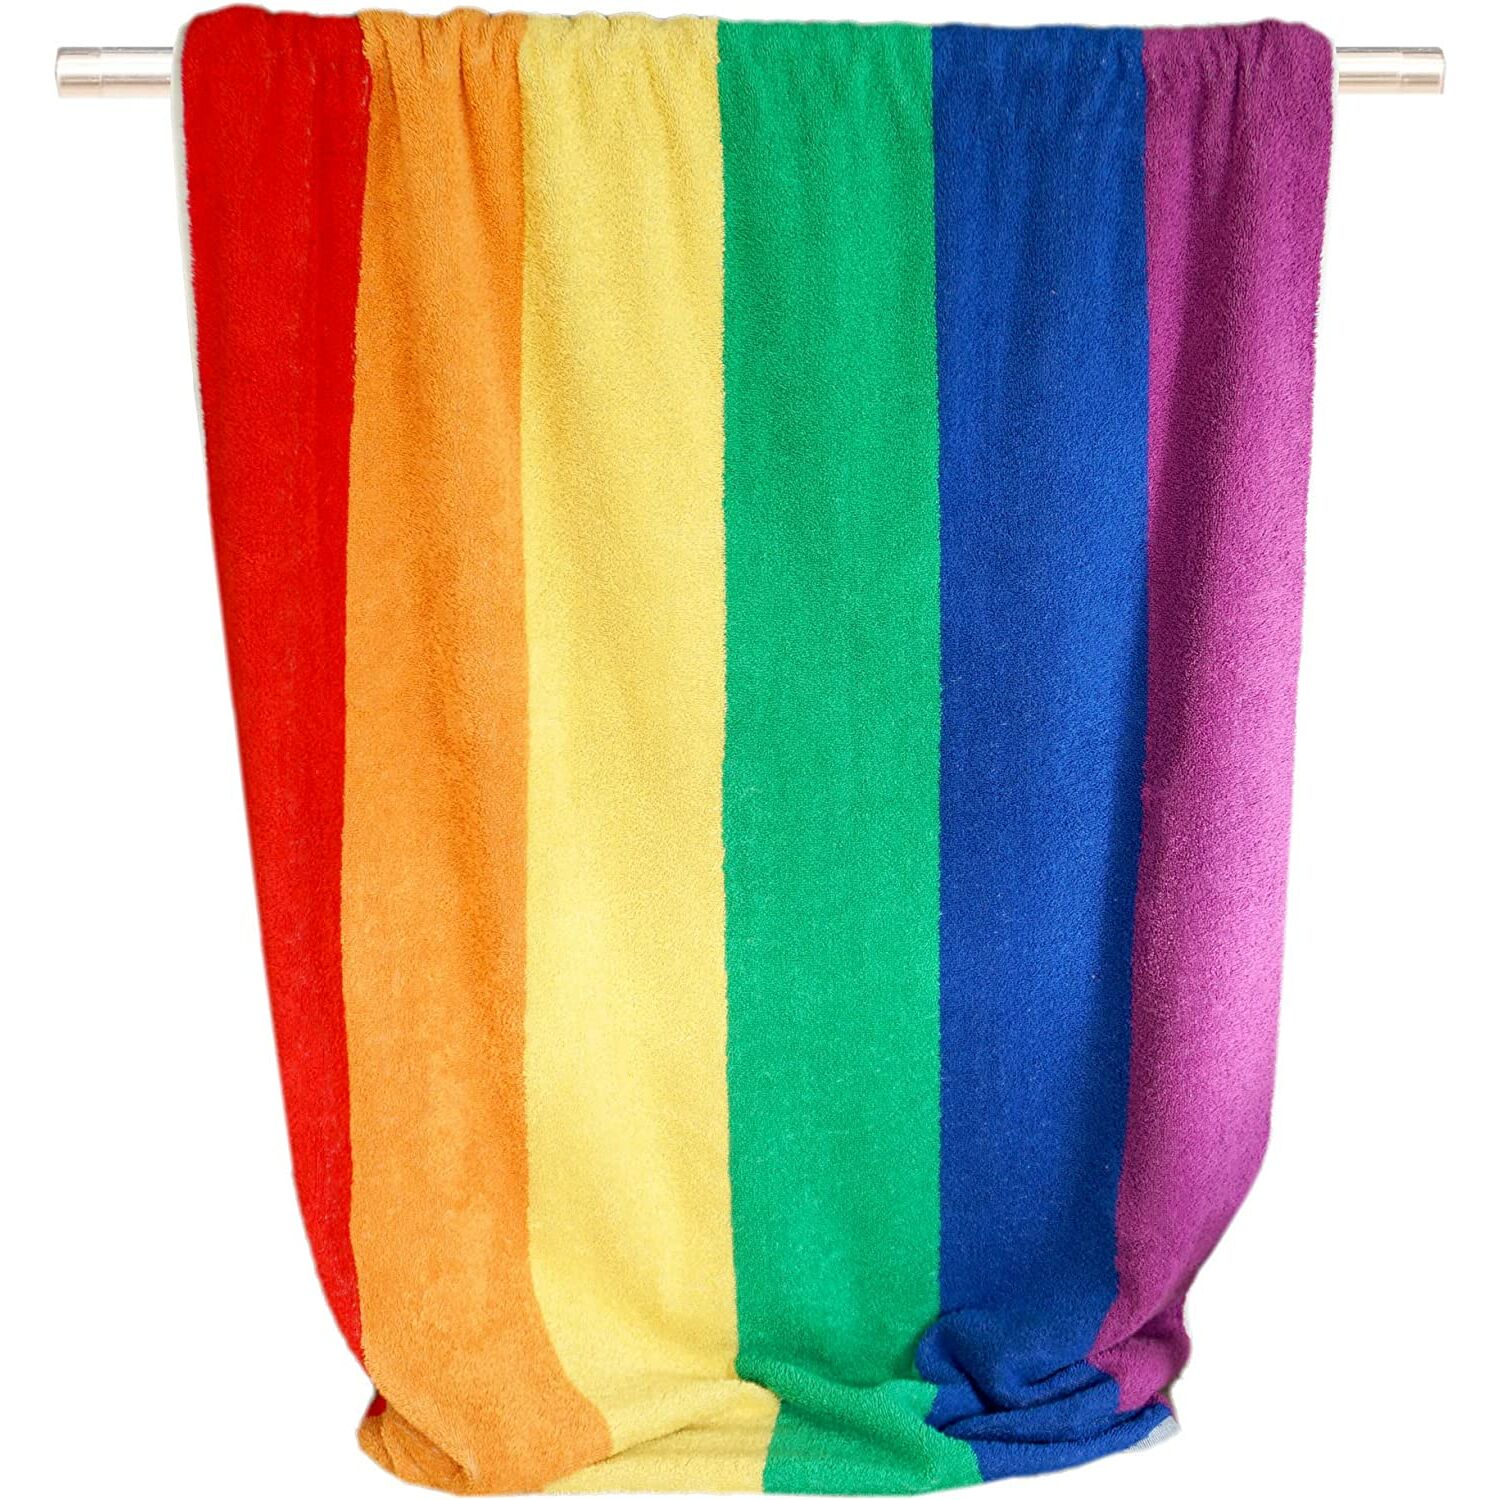 Handtücher :: Buntes Handtuch Badetuch Frottee mit Streifen, 90x180 Regenbogen cm, groß Strandtuch